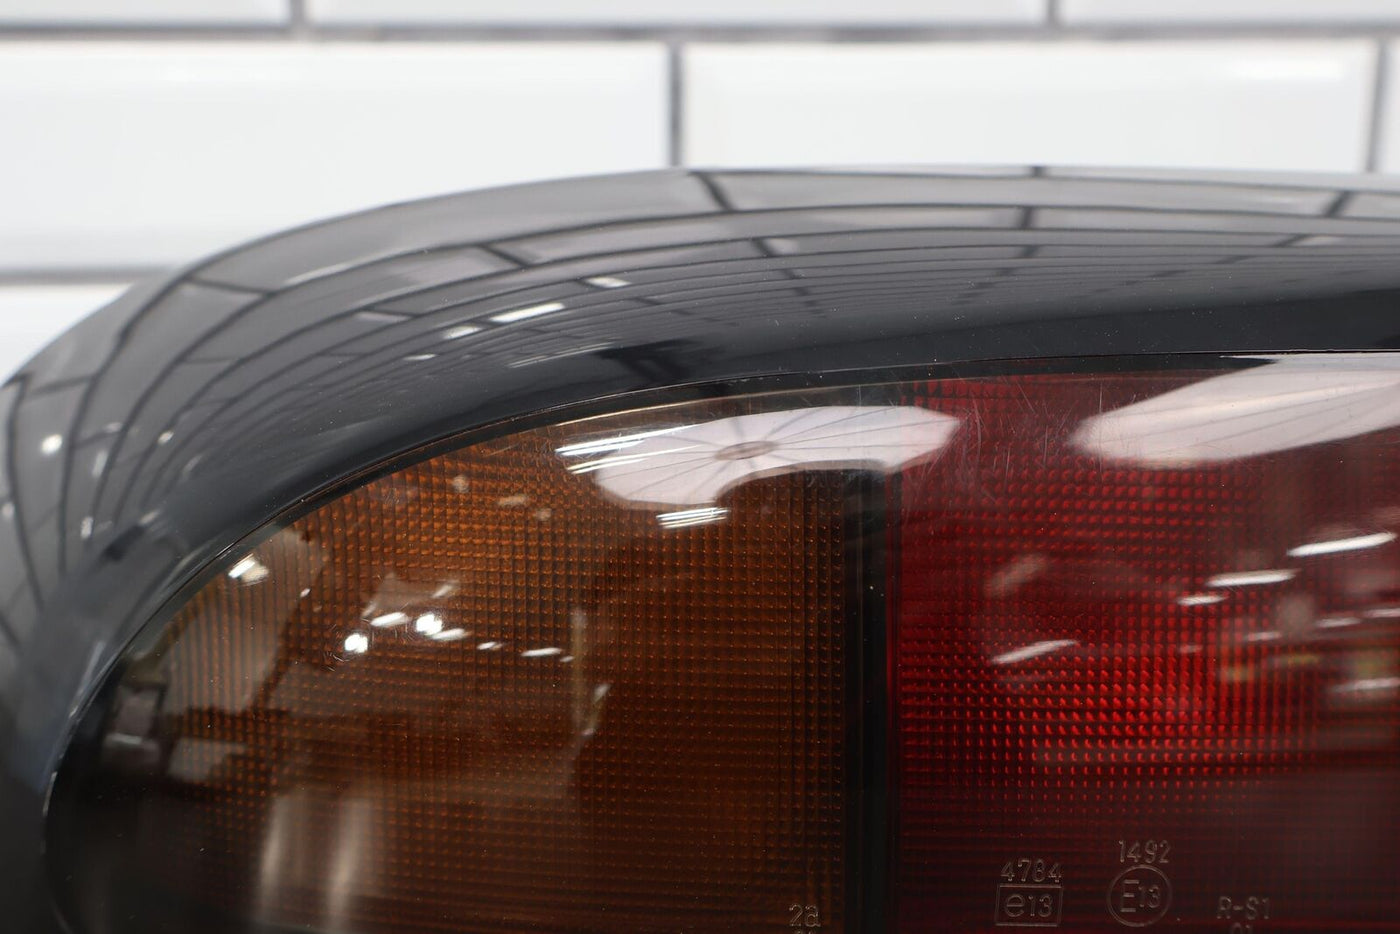 93-95 Mazda RX7 FD Rear OEM Left Tail Light Lamp W/Harness FD01-51-180b -Tested